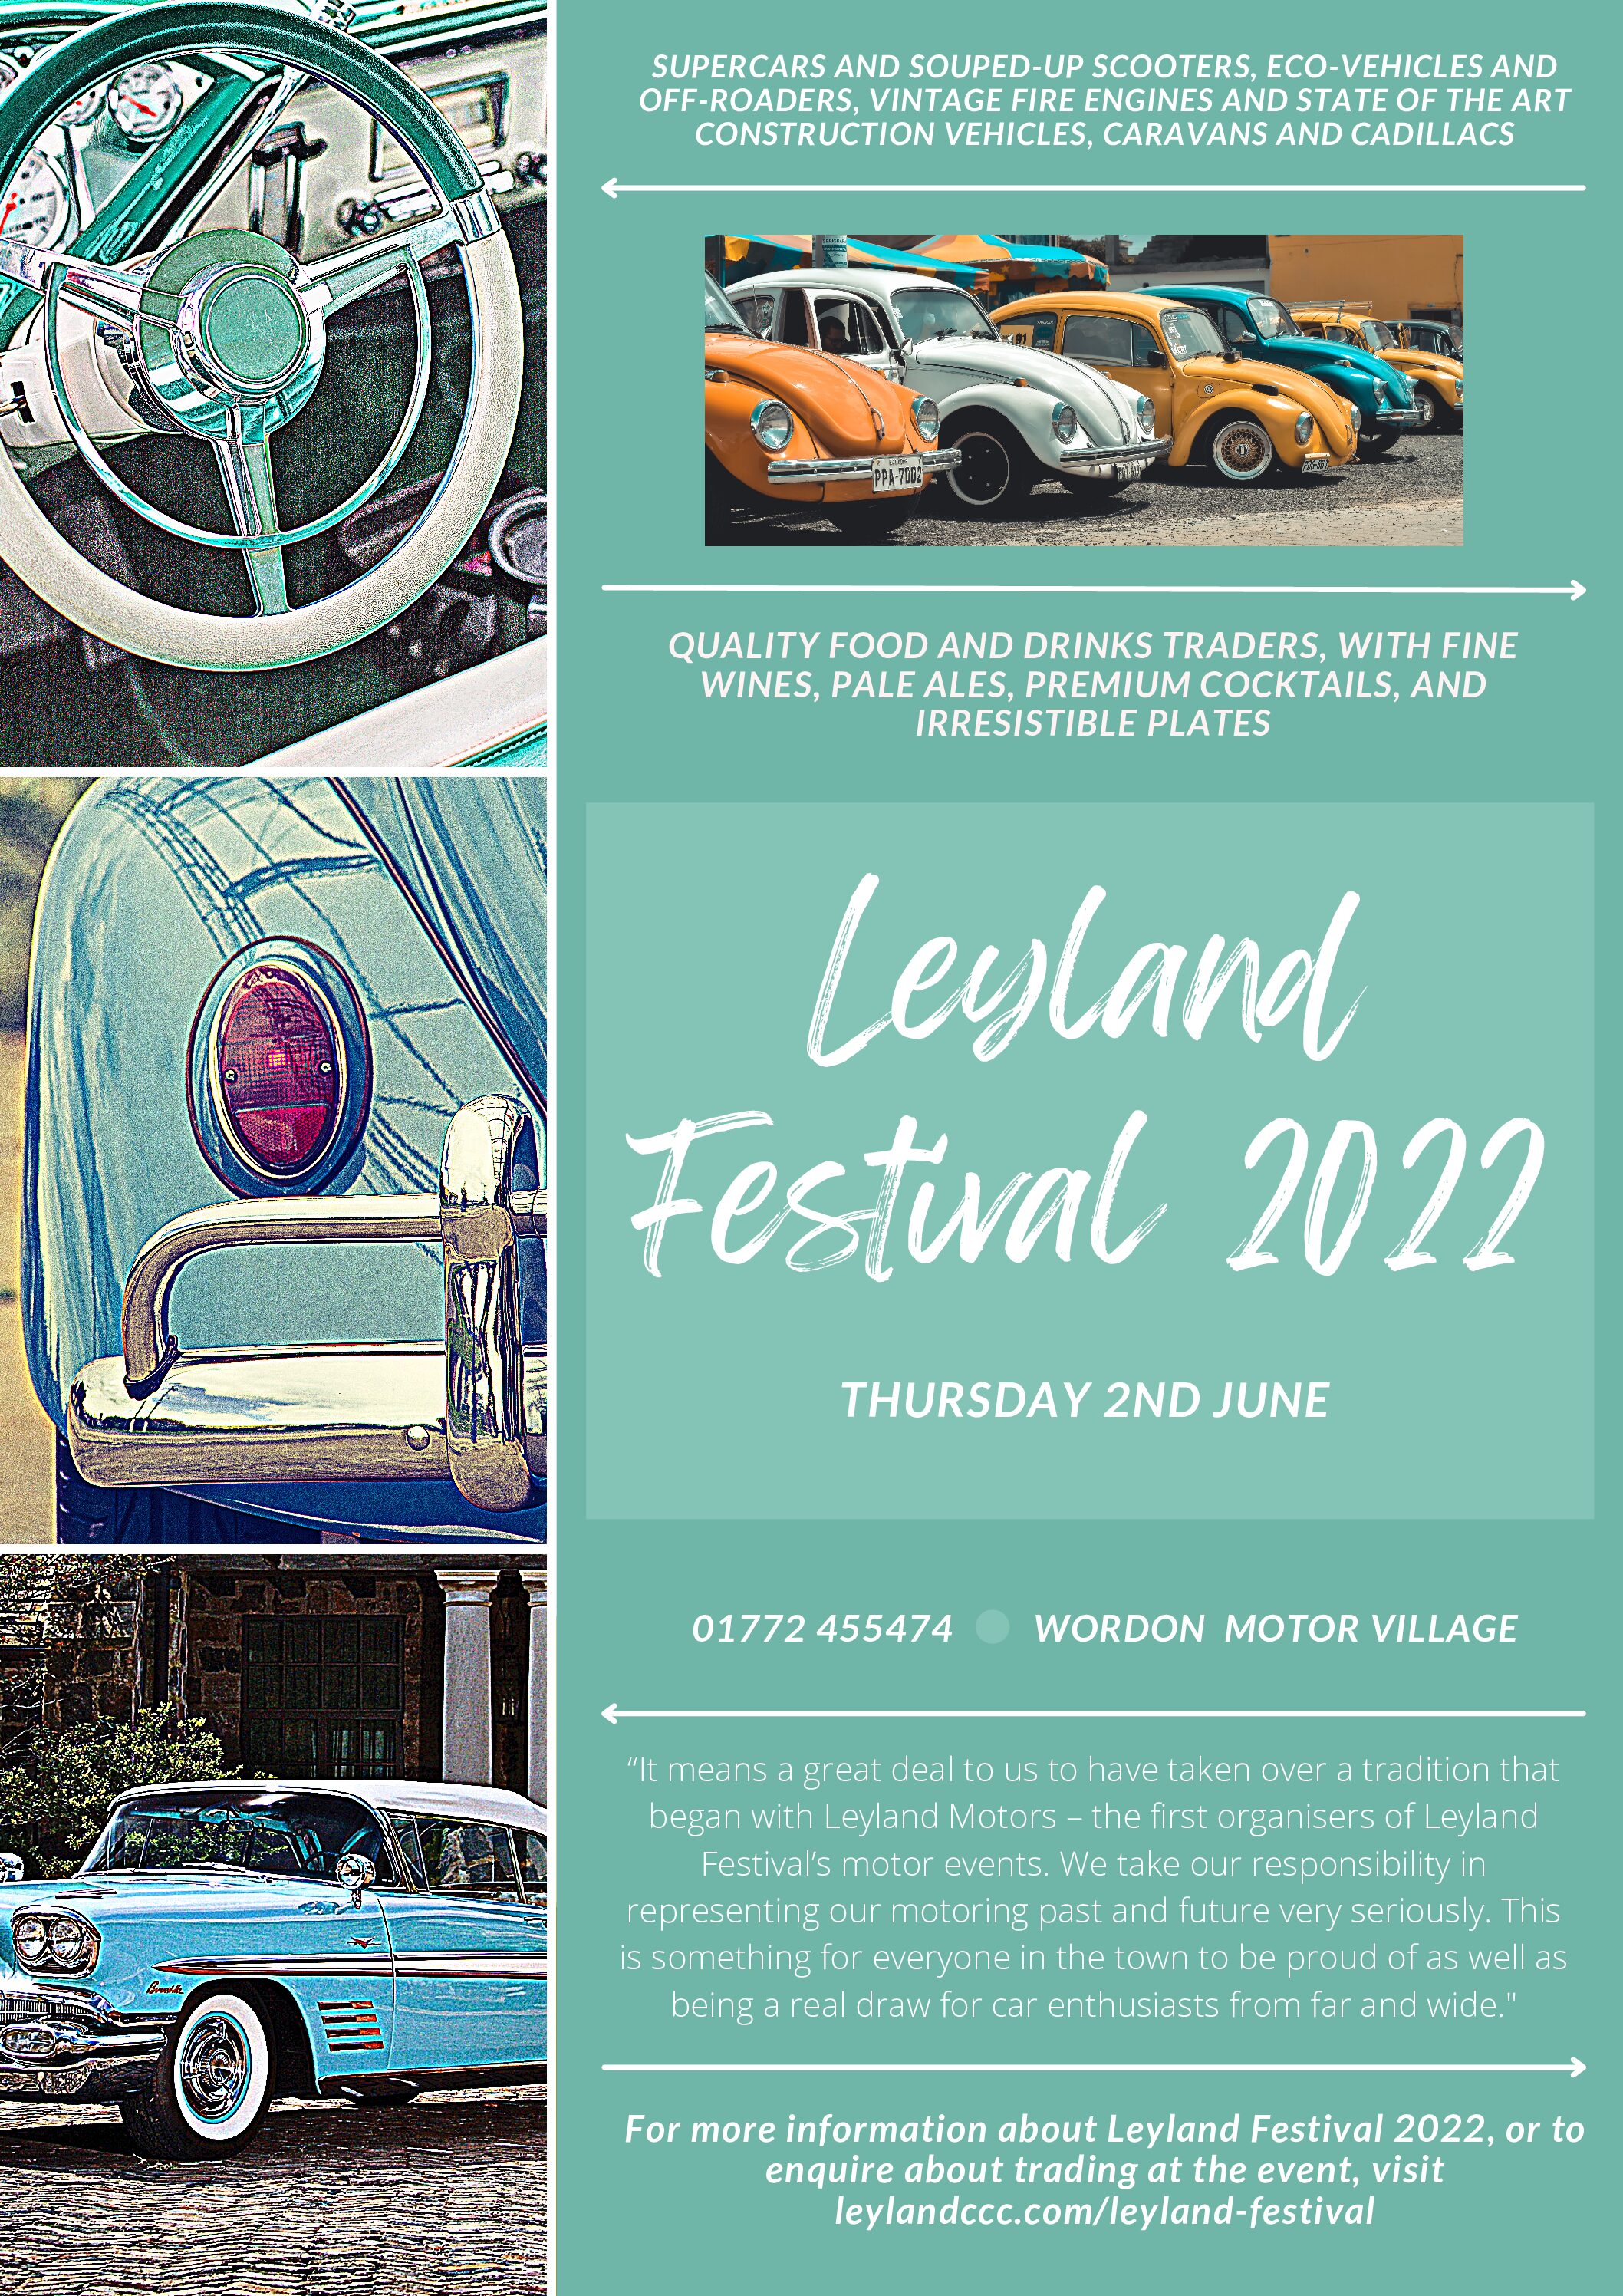 Leyland Festival 2022 – Thursday 2nd June